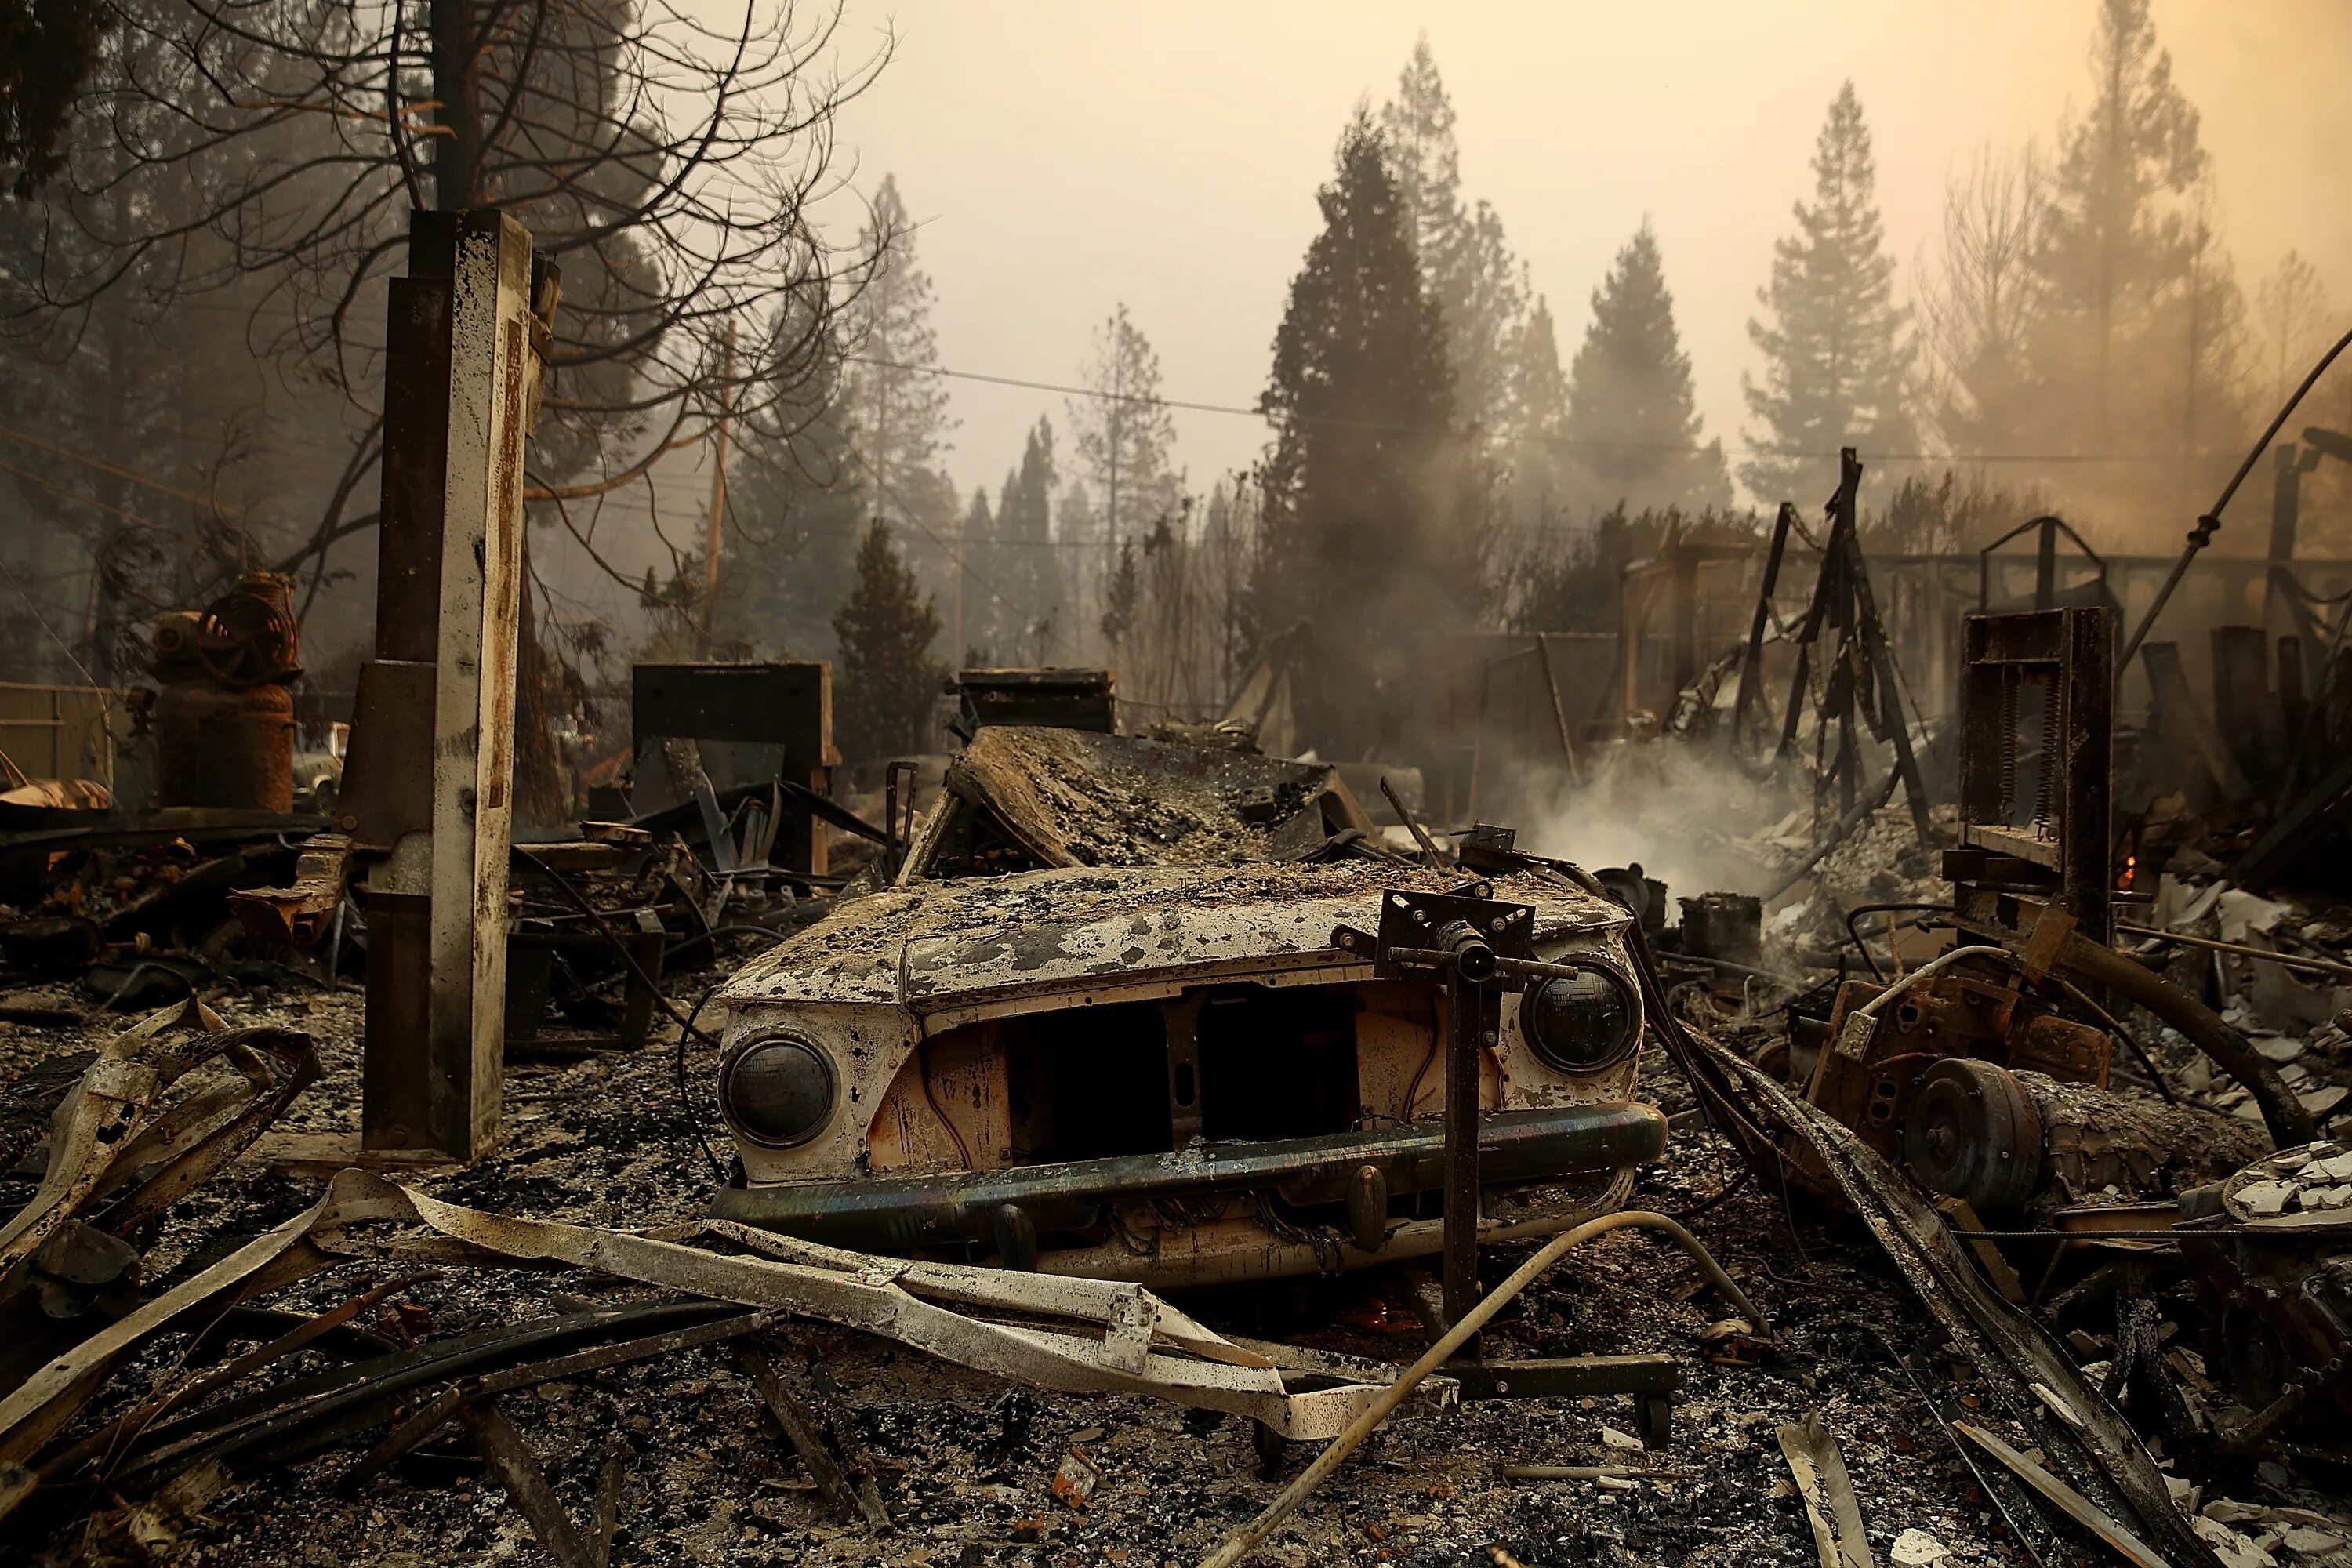 Сгоревшая верь. Лес после пожара. Развалины после пожара. Пепелище в лесу.